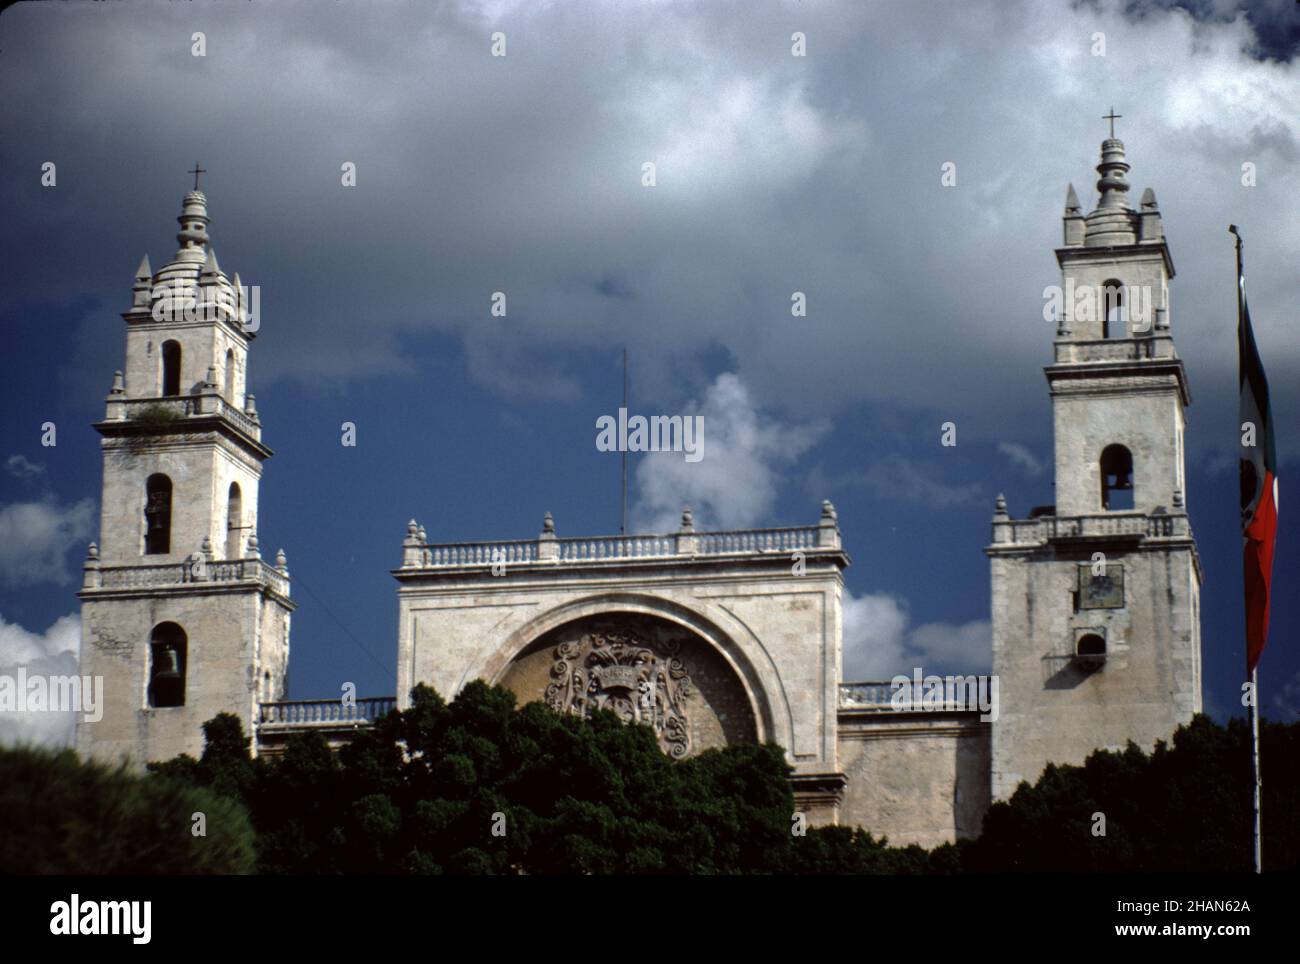 Merida, Mexiko. 12/27/1985. Kathedrale San Ildefonso. Erbaut auf dem Gelände einer Maya-Ruinen um 1525-1568. Stockfoto